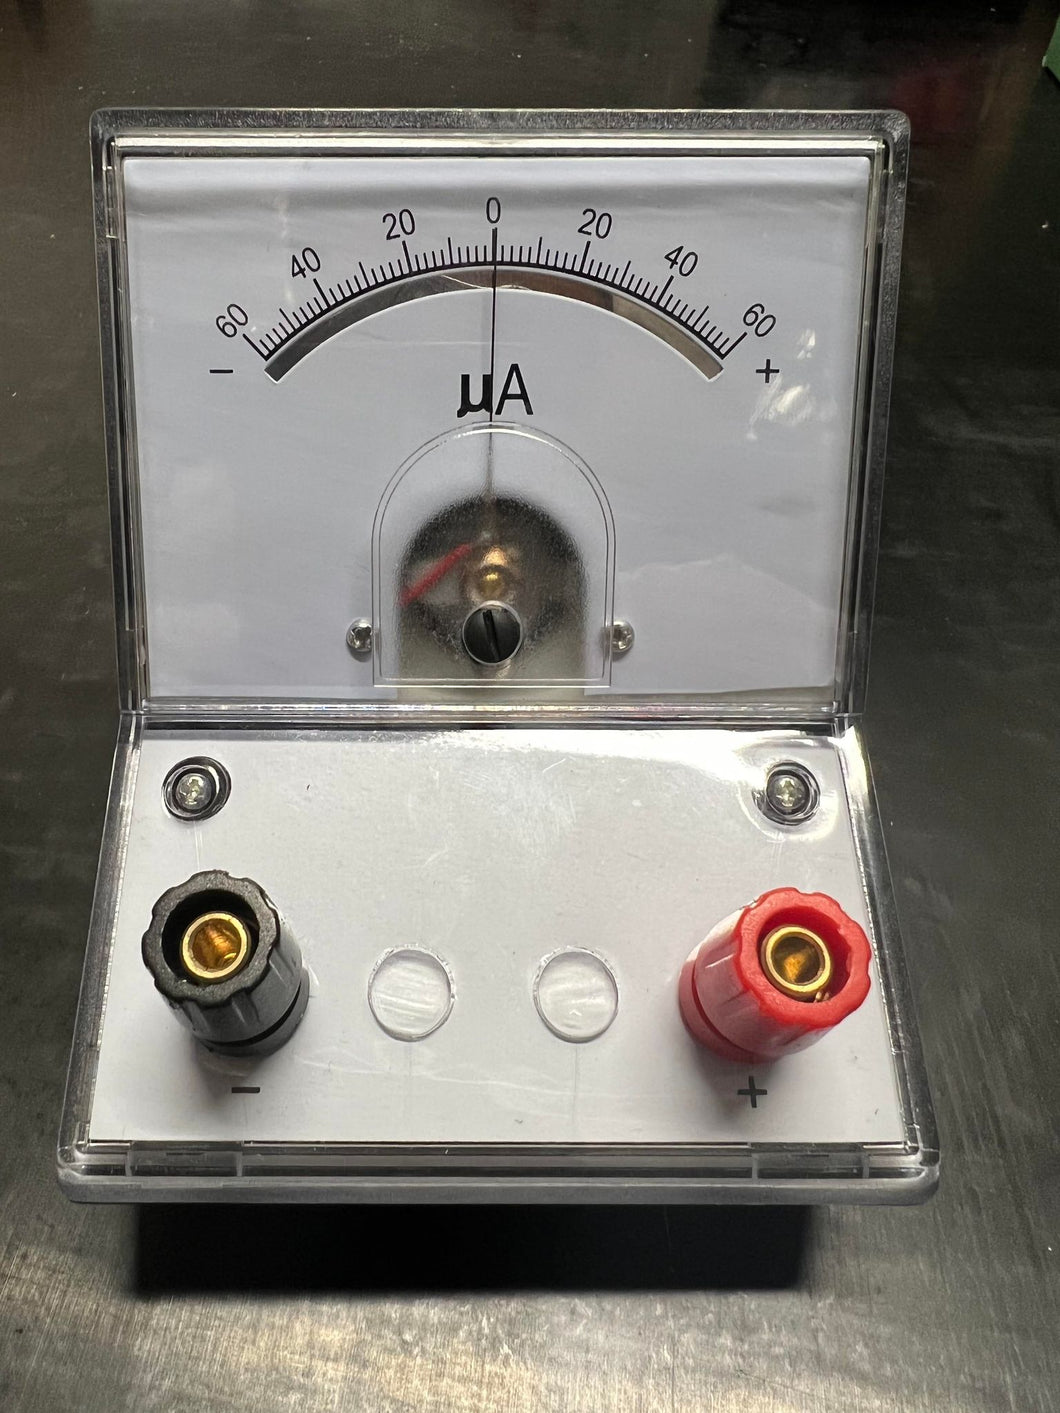 Electromagnetism ~ Galvanometer Analog - 60-0-60uA